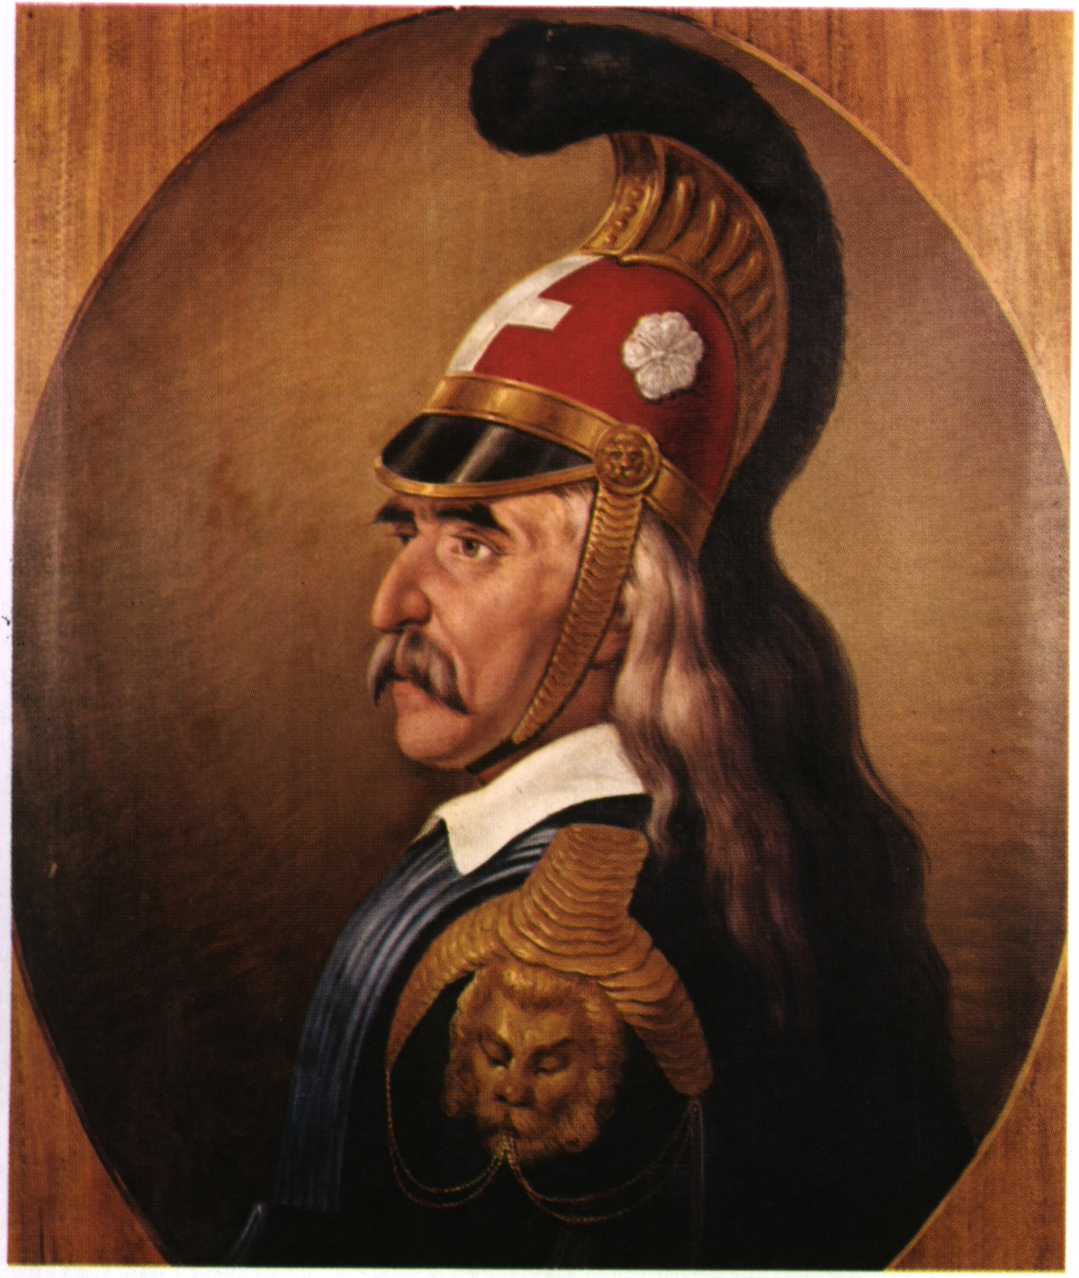 ΘΕΟΔΩΡΟΣ ΓΡΙΒΑΣ: Αγωνιστής του 1821, στρατηγός και πολιτικός (Ολοκληρωμένο) - Φωτογραφία 59